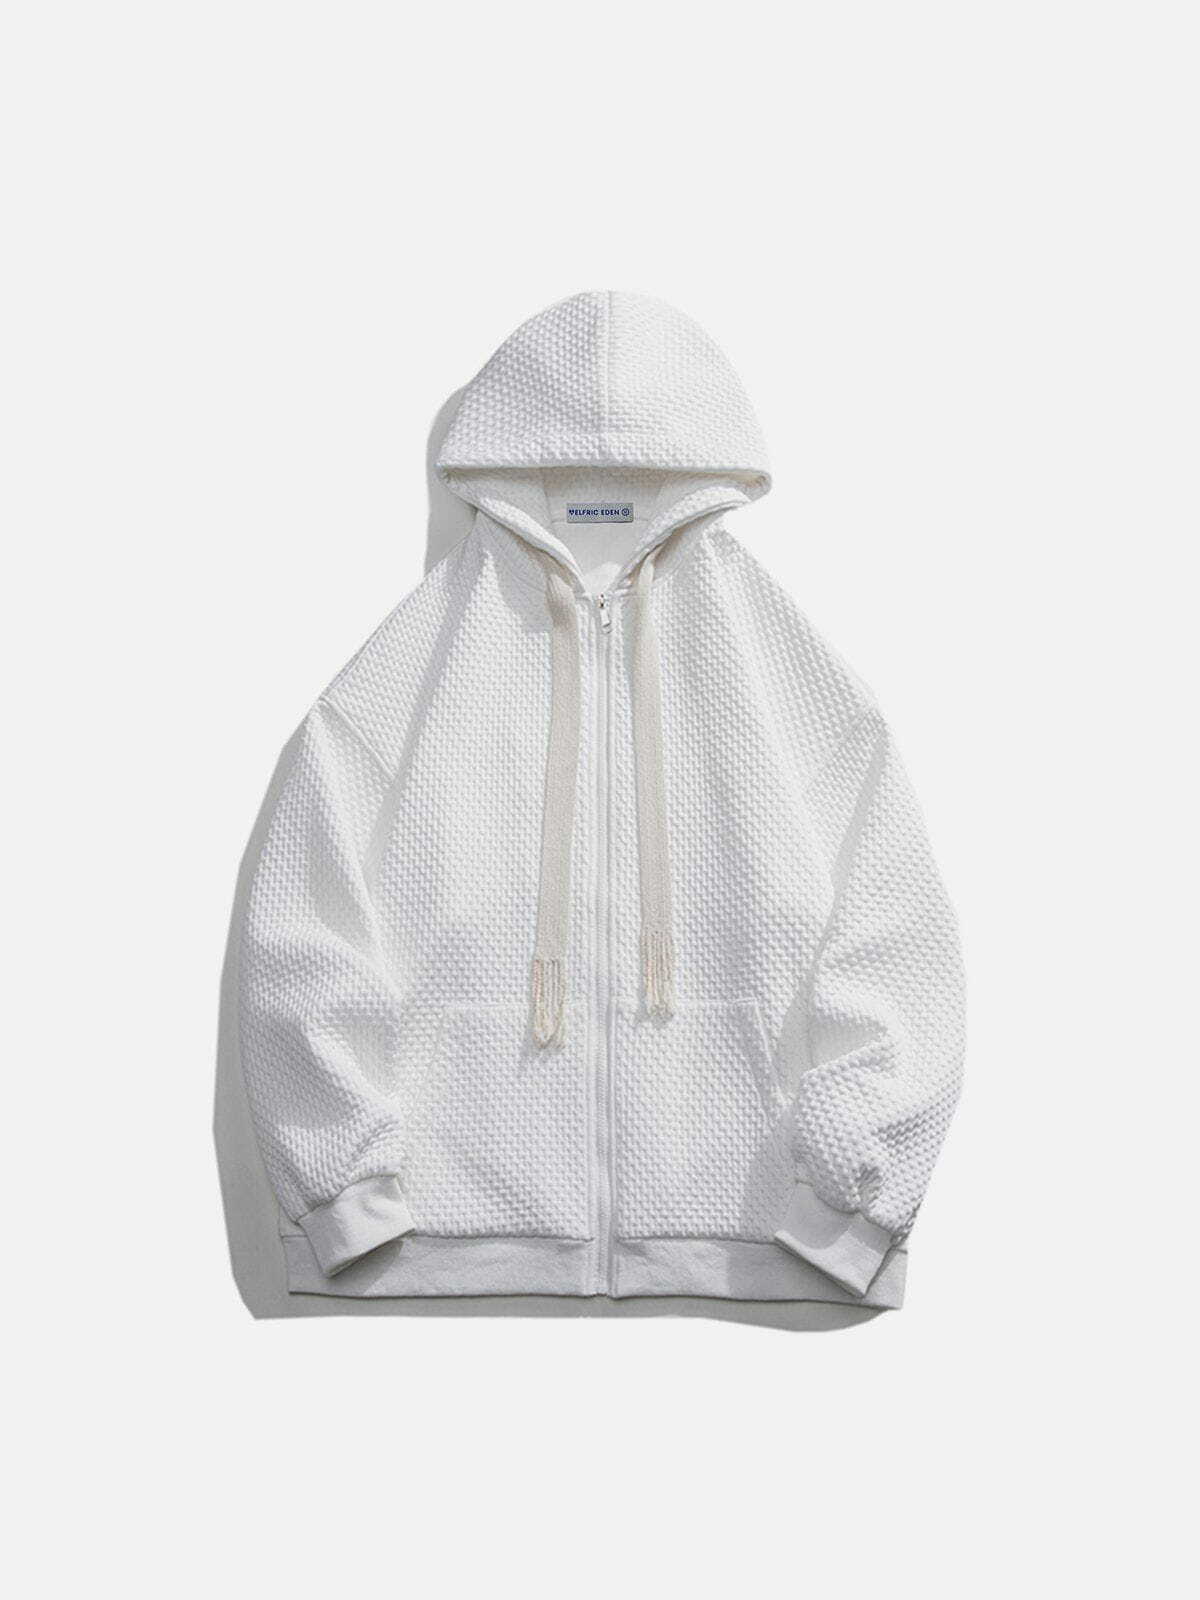 minimalist jacquard hoodie   sleek urban comfort design 2544